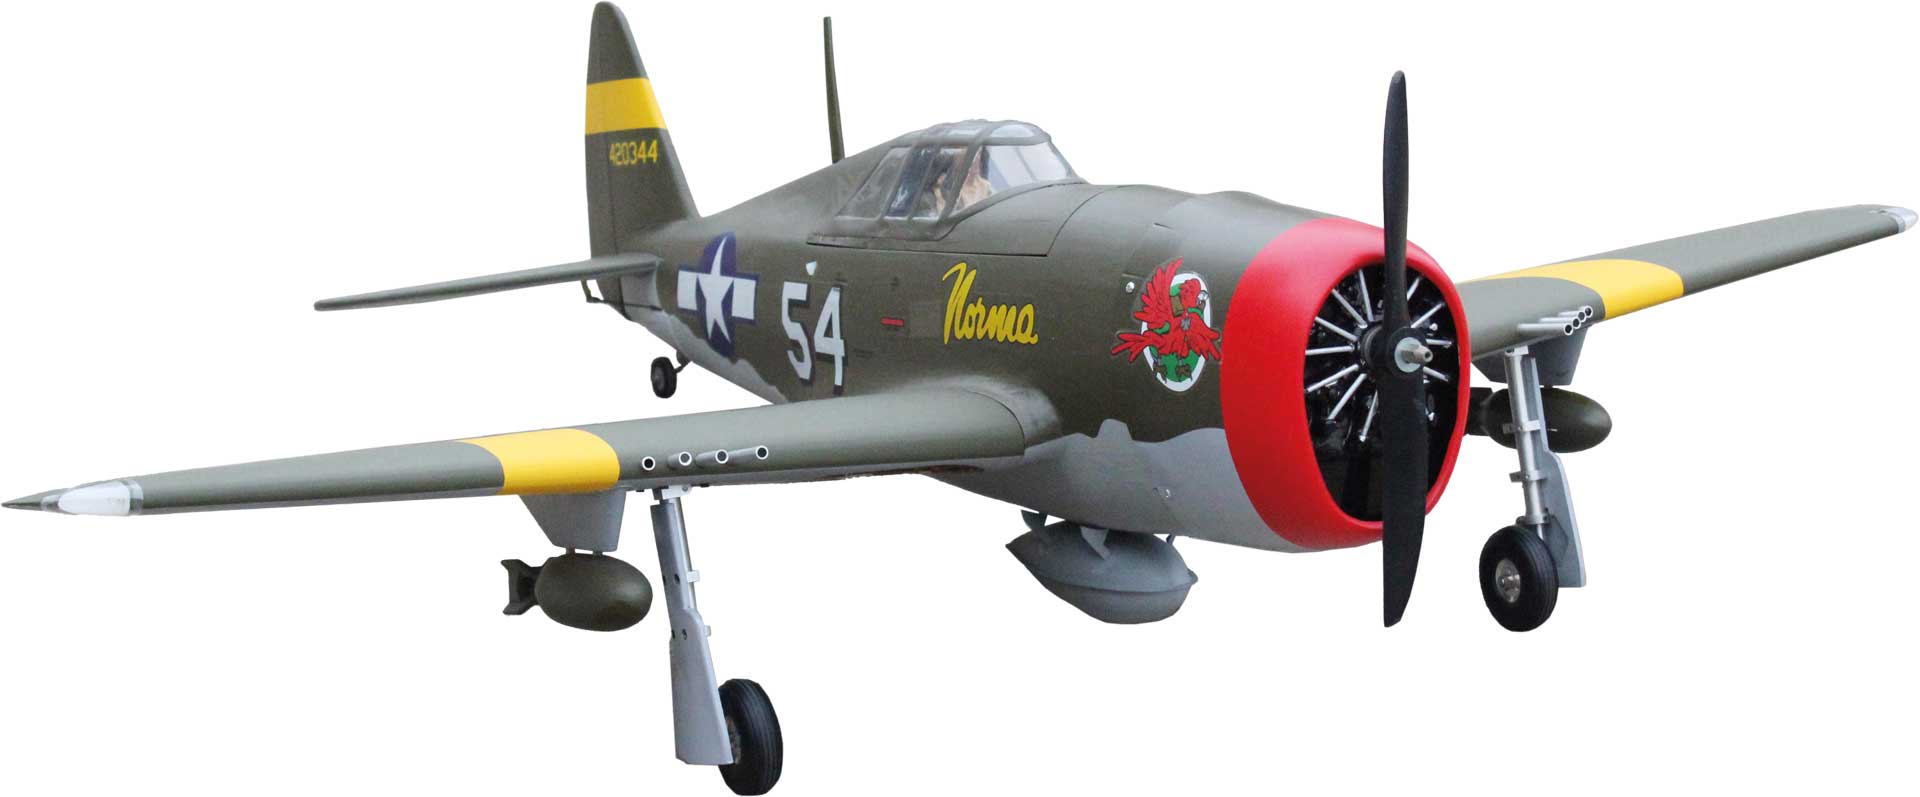 Seagull Models ( SG-Models ) P-47D Little Bunny MK-II 10ccm 55" mit elektrischem Einziehfahrwerk ARF Warbird